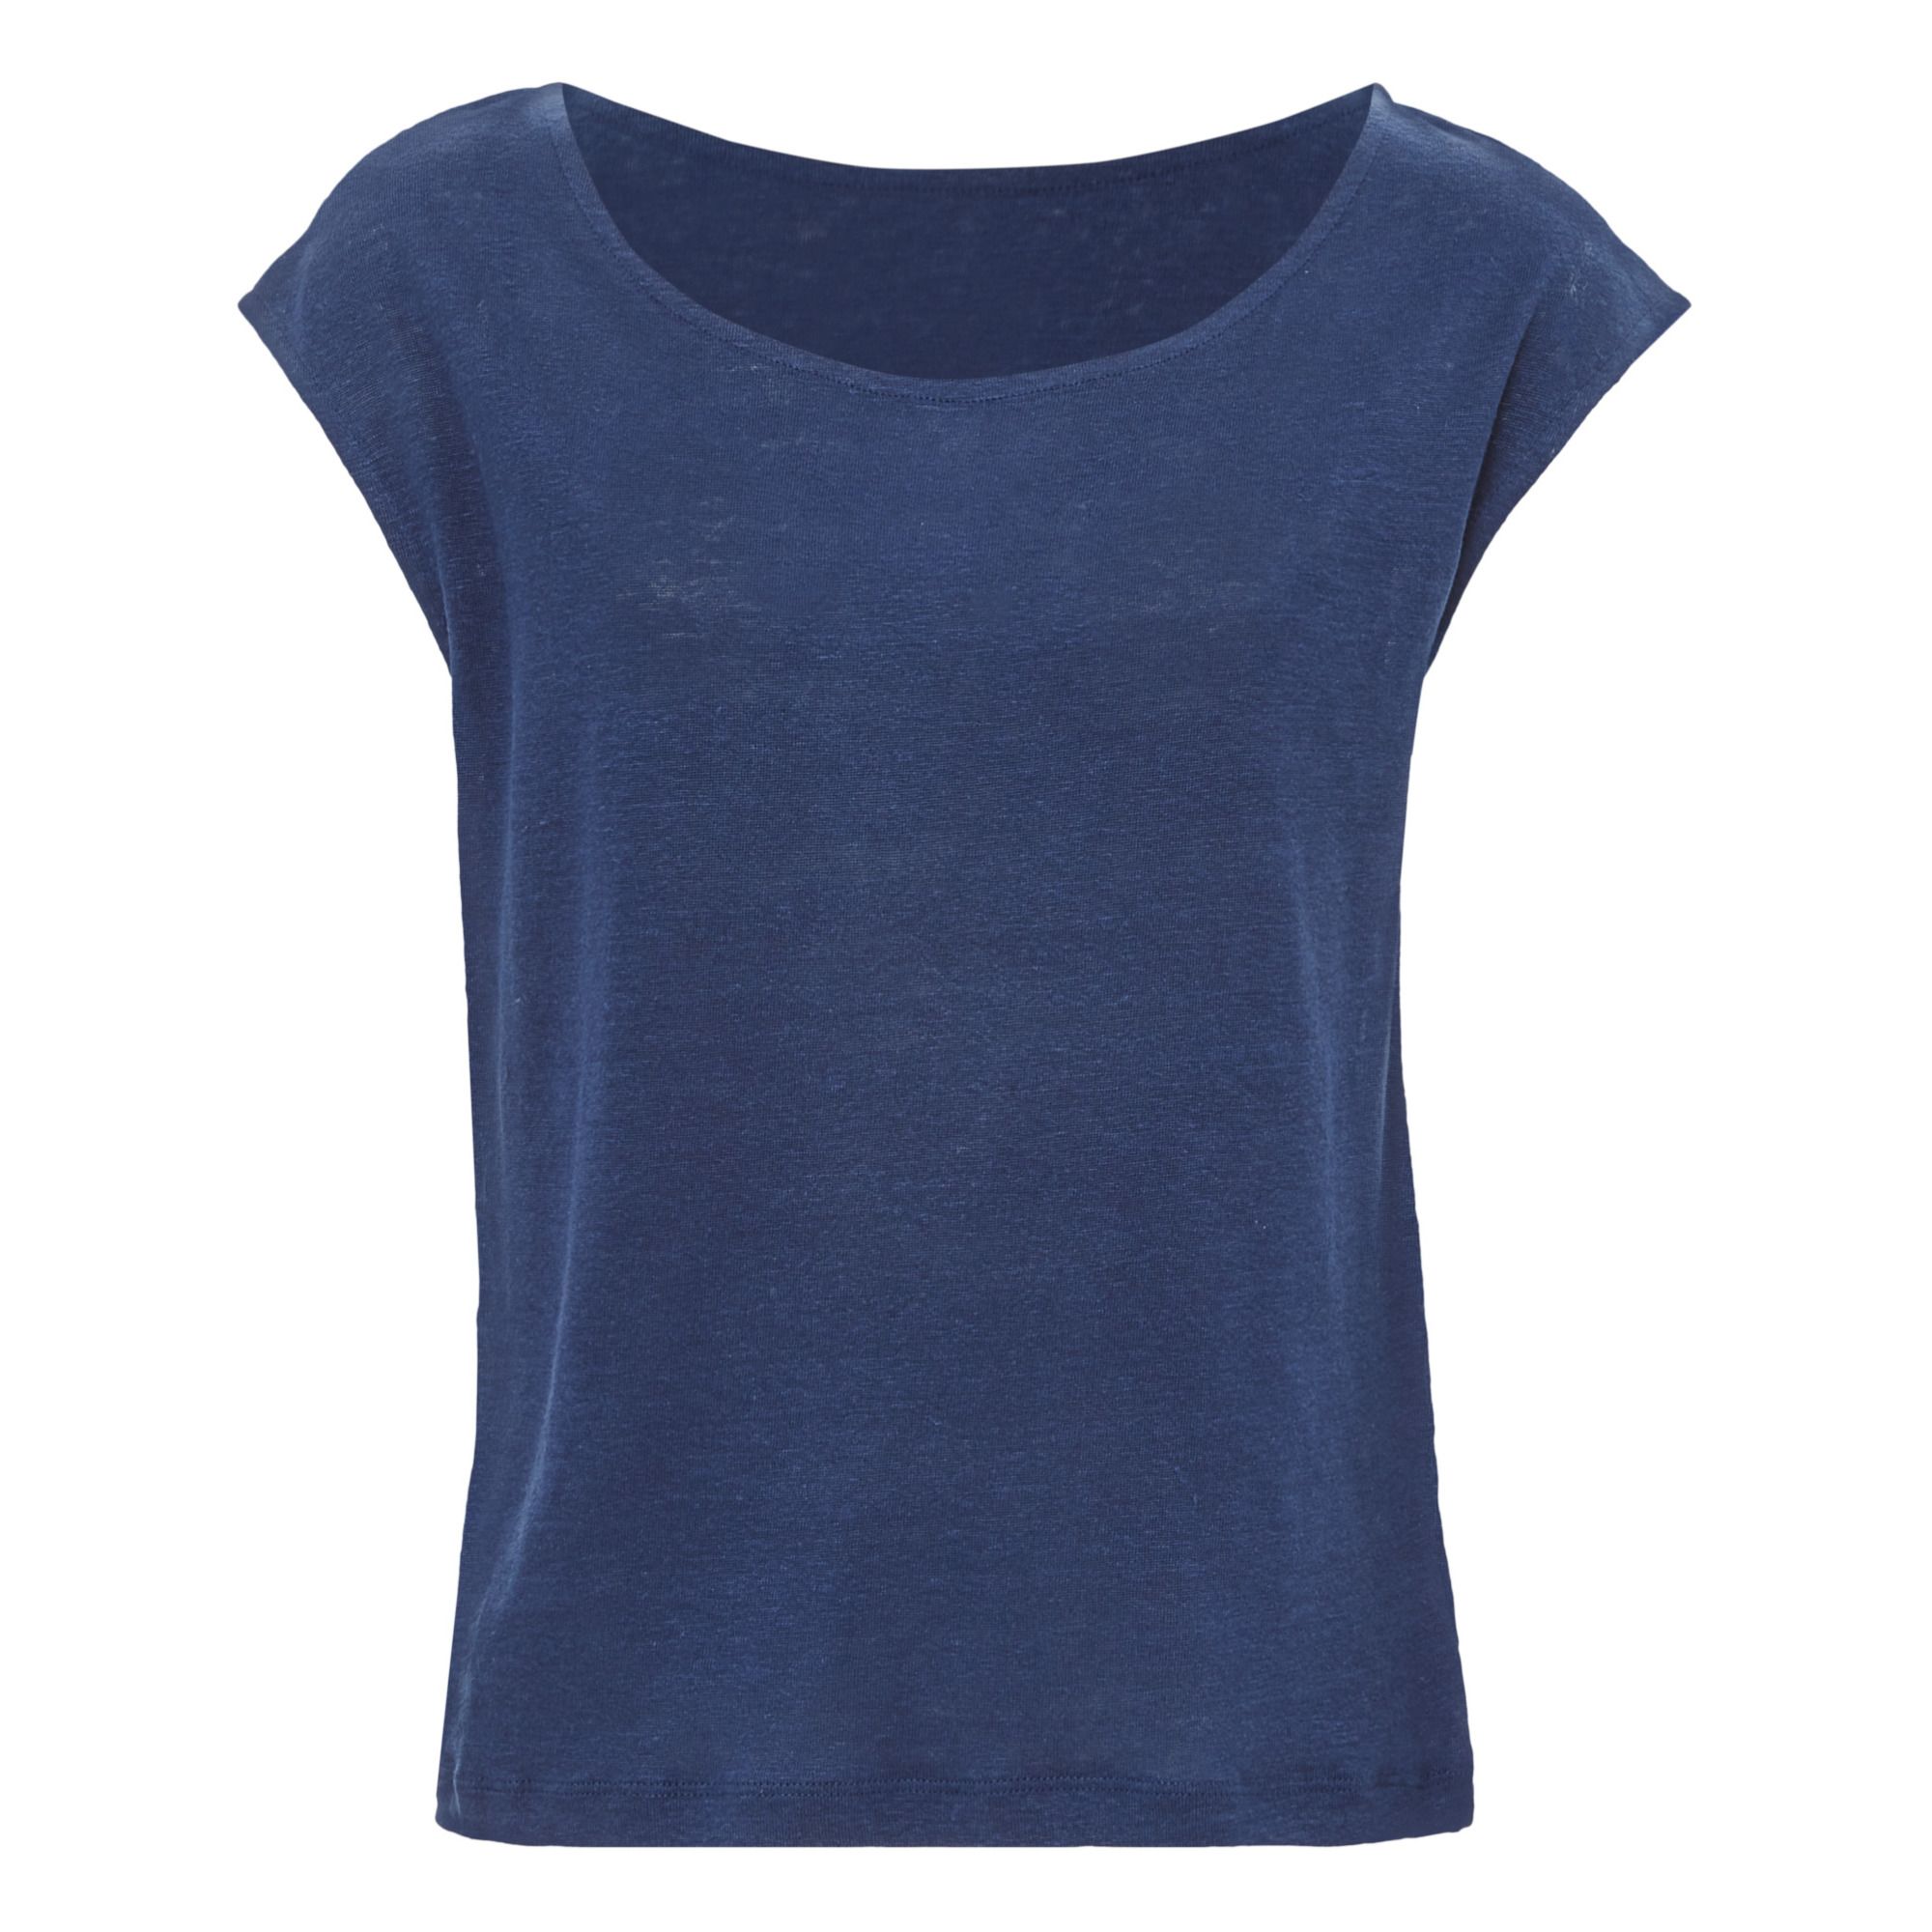 Petit Bateau - T-Shirt Col Bateau - Collection Adulte - - Femme - Bleu marine